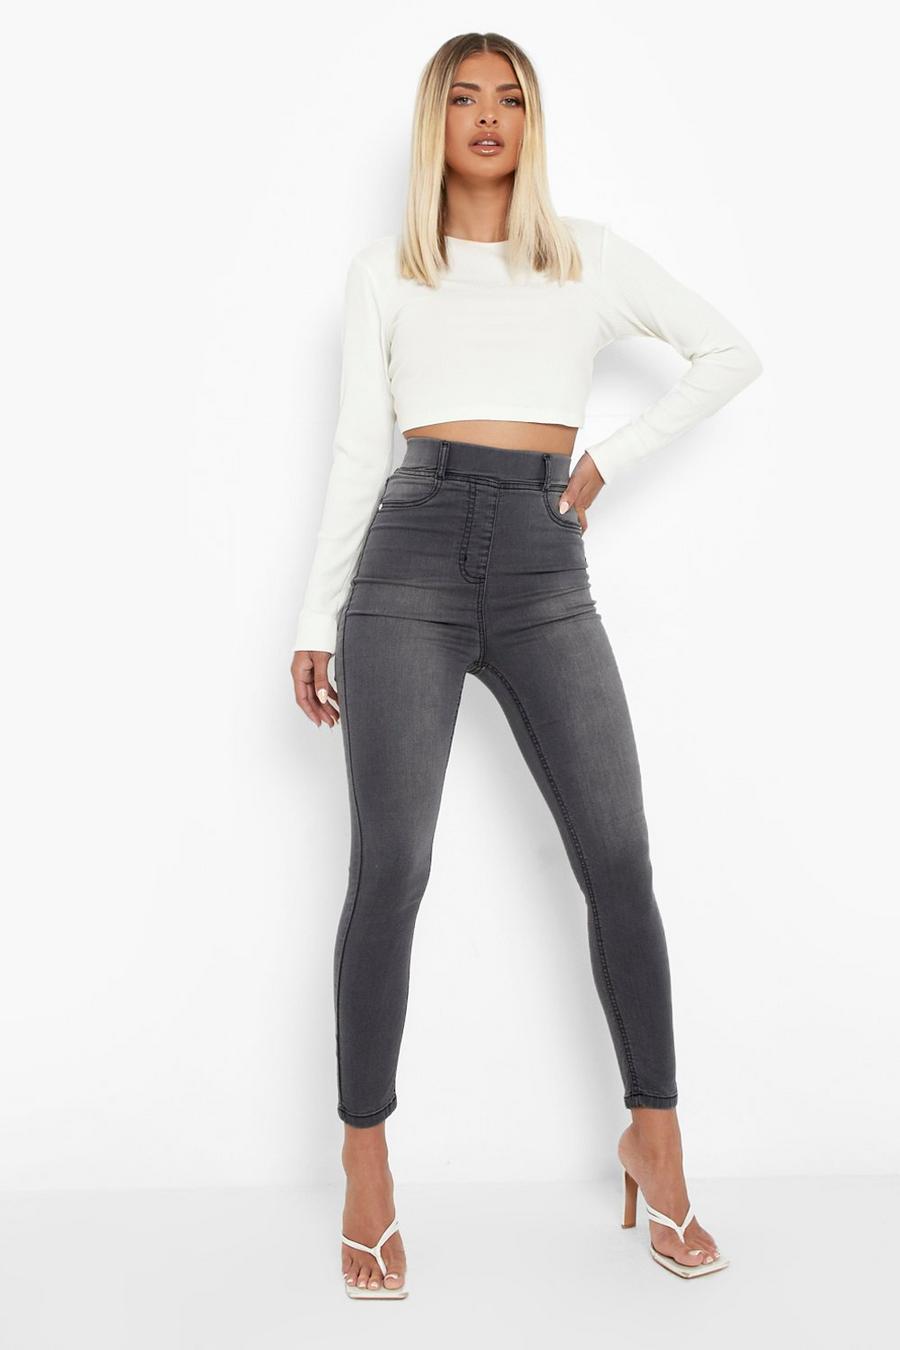 Buy Women's Grey Jeggings Jeans Online